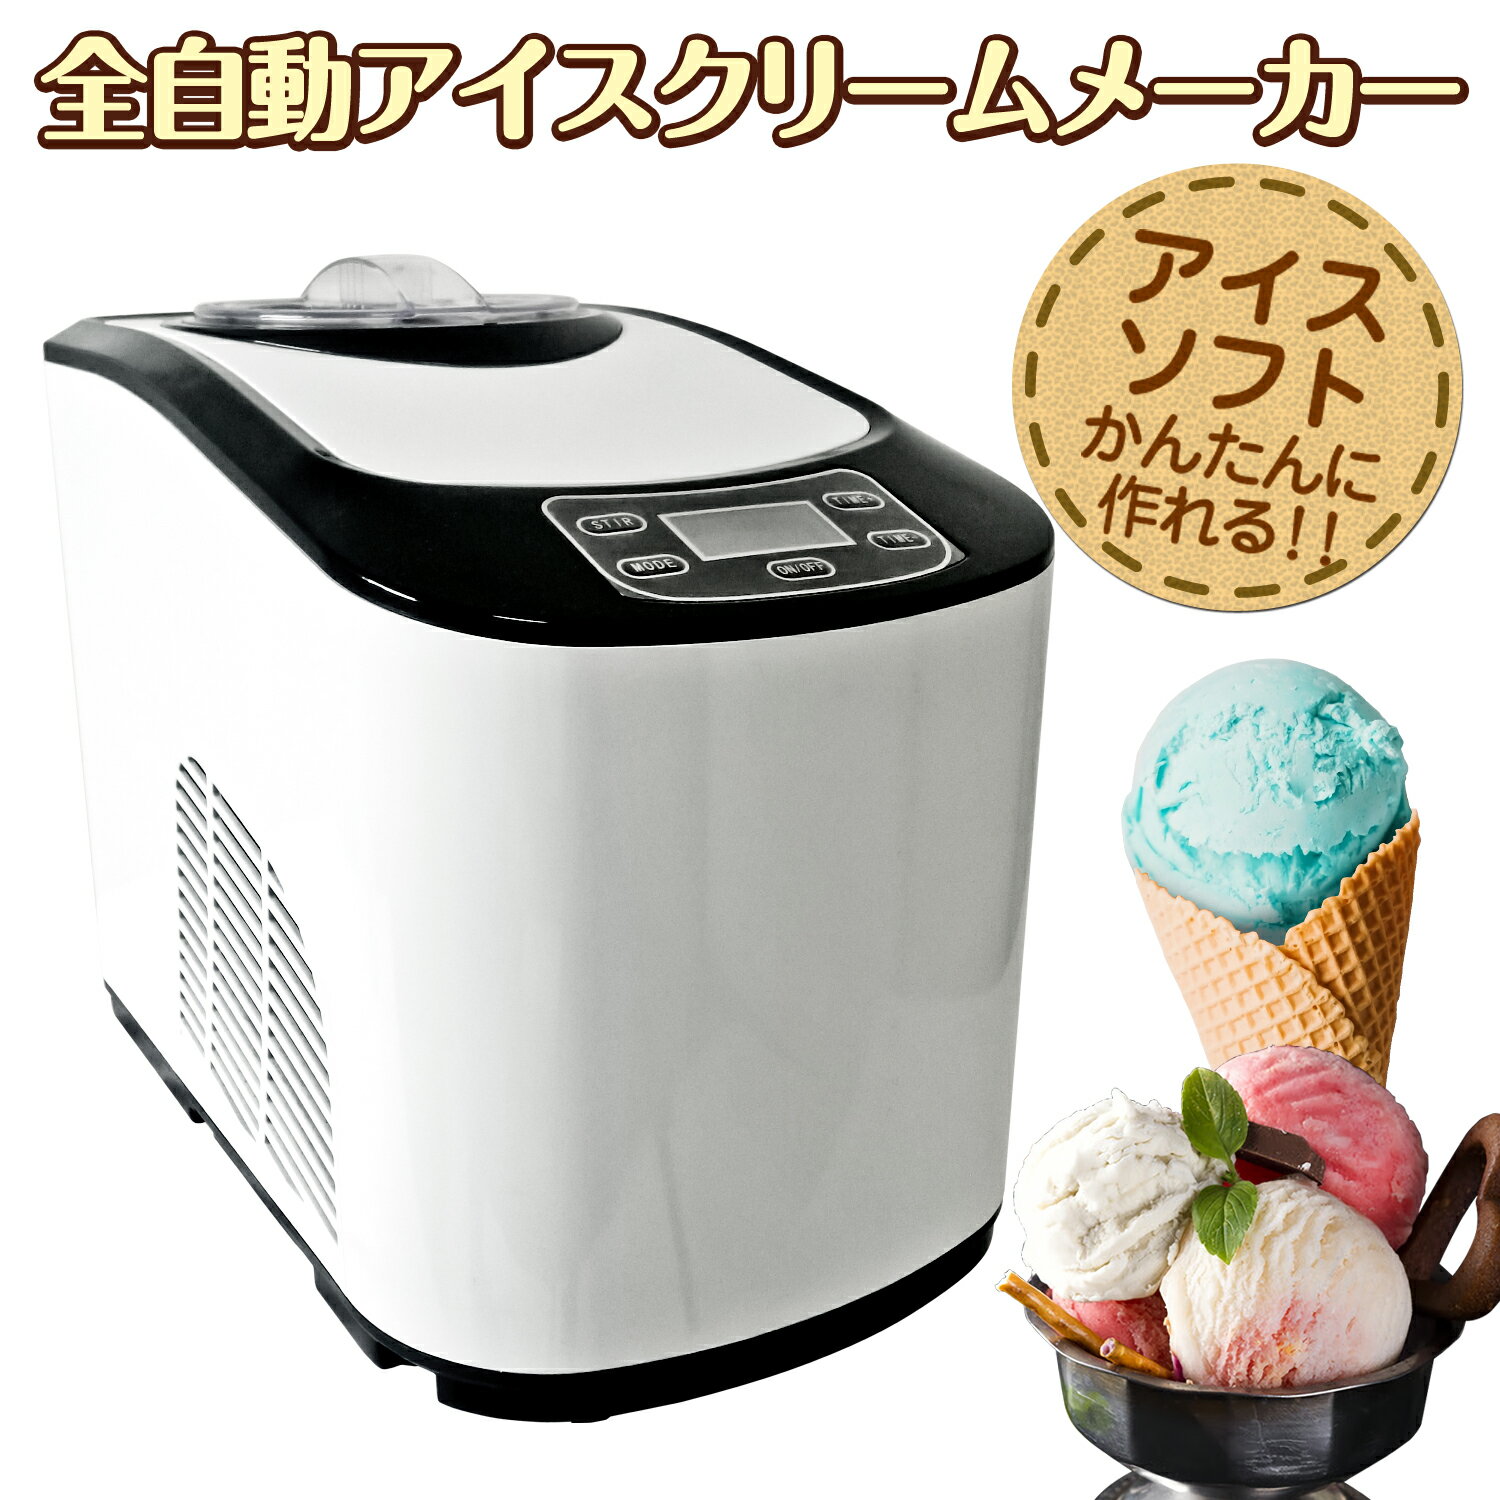 アイスクリームメーカー 全自動 業務用/家庭用【 KWI-1